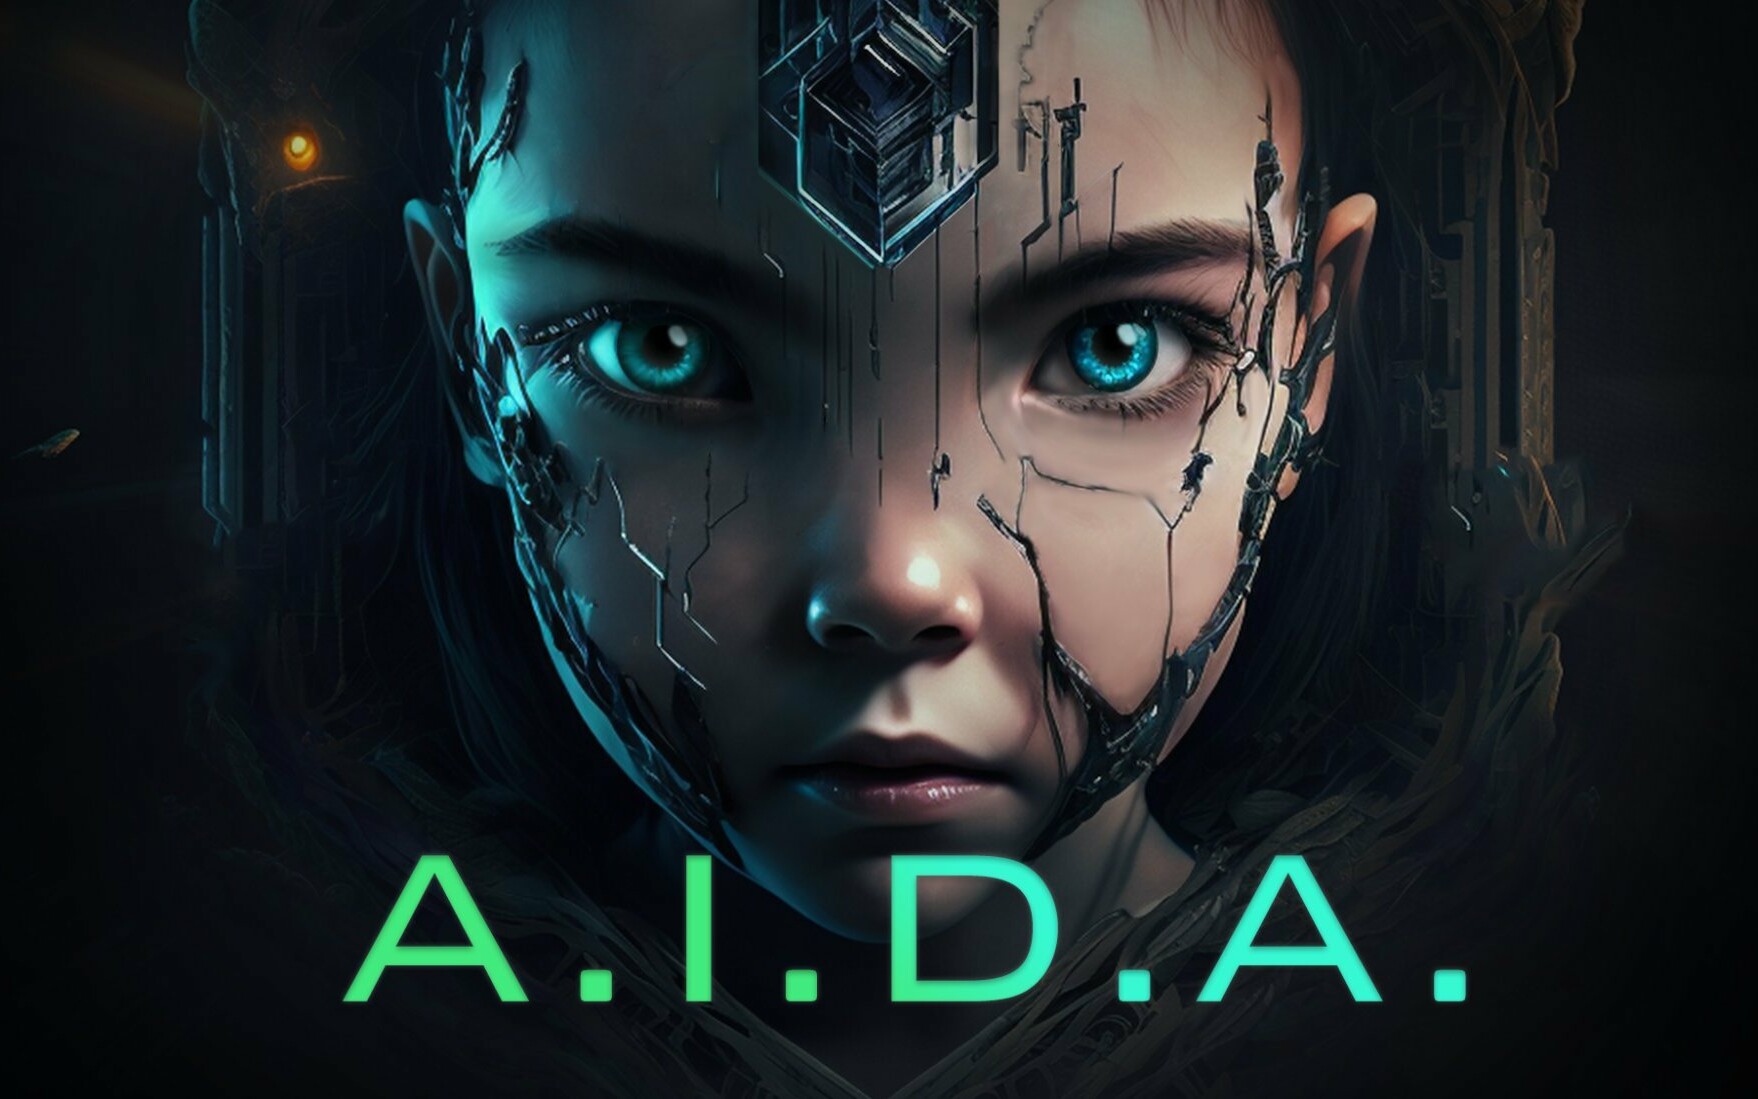 Project: A.I.D.A.